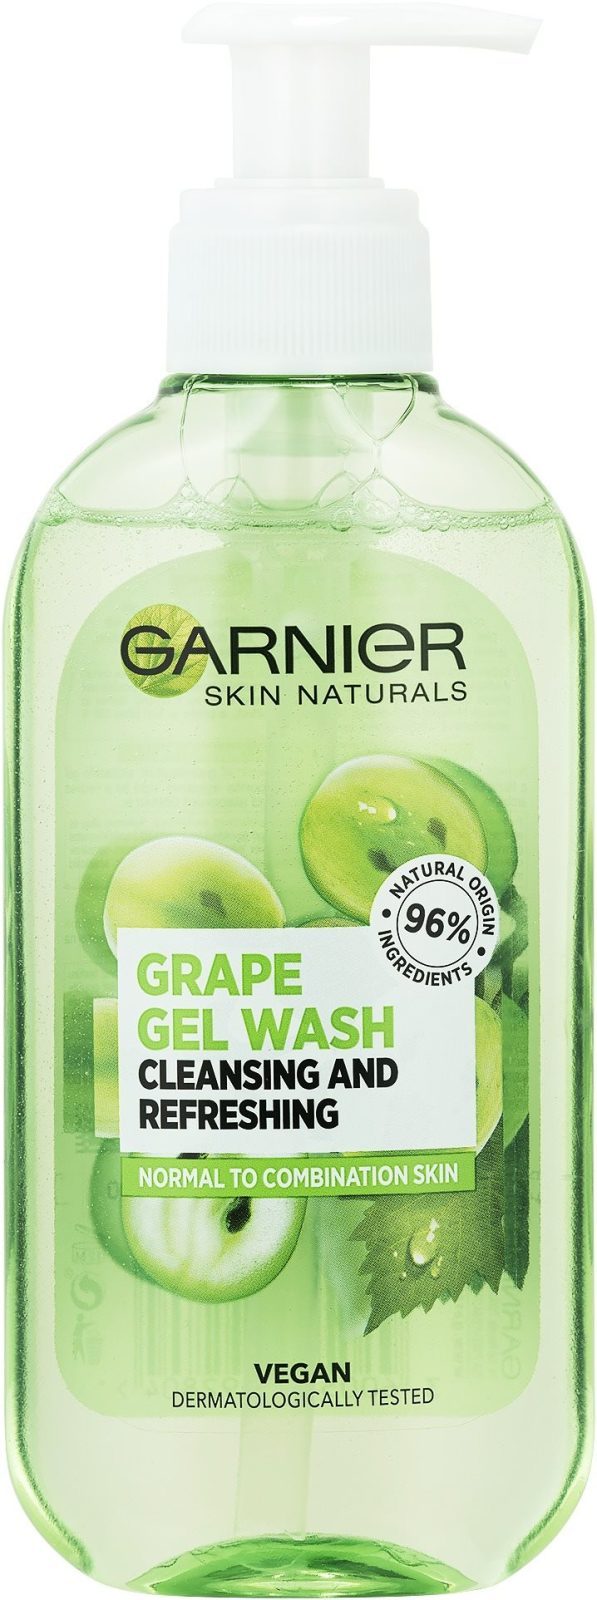 Tisztító gél GARNIER Skin Naturals Essentials tisztító habzó gél 200 ml